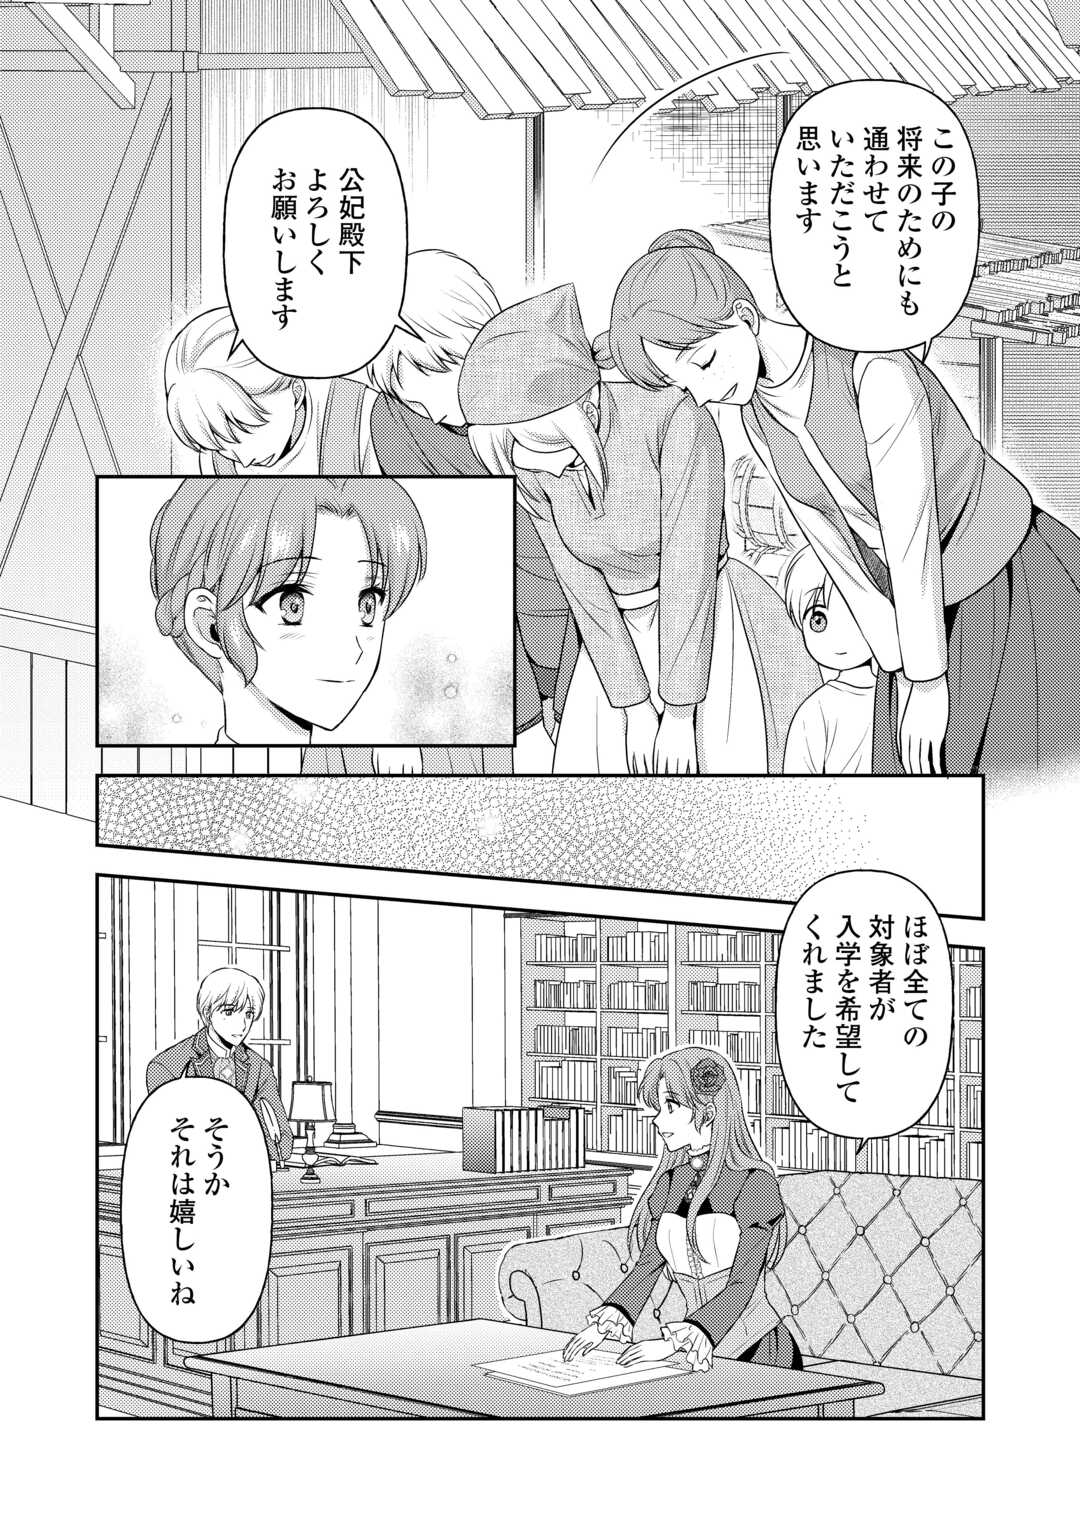 Kawaii Gimai ga Konyakuhaki Saretarashii no de, Ima kara Orei ni Mairimasu. - Chapter 13 - Page 14